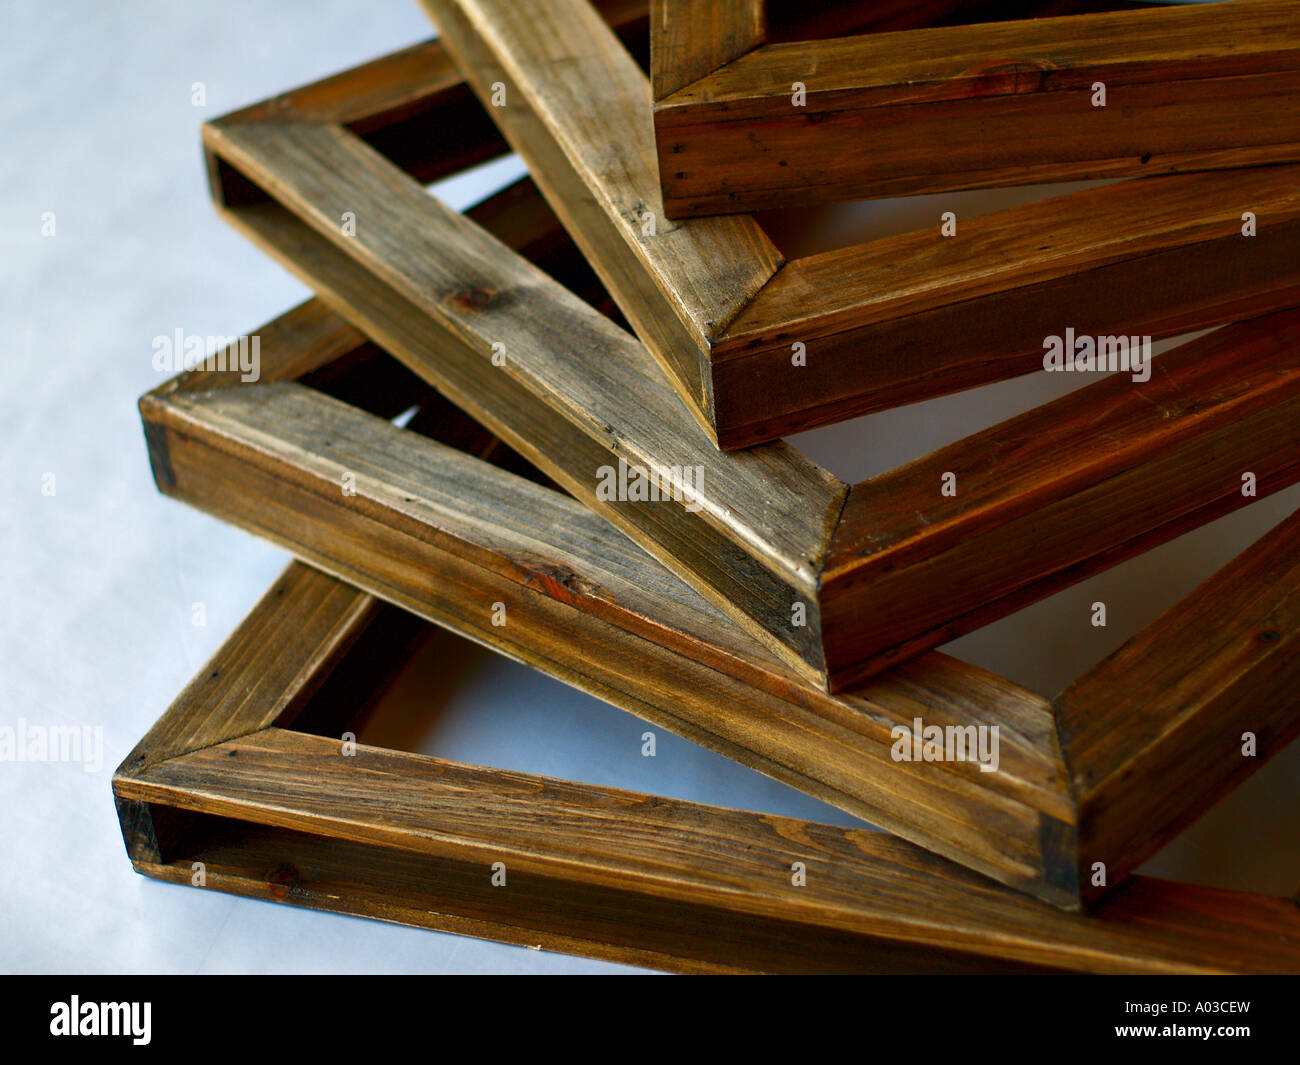 Finitura rustico in legno massiccio fotogrammi in subì, illuminazione fredda. Foto Stock